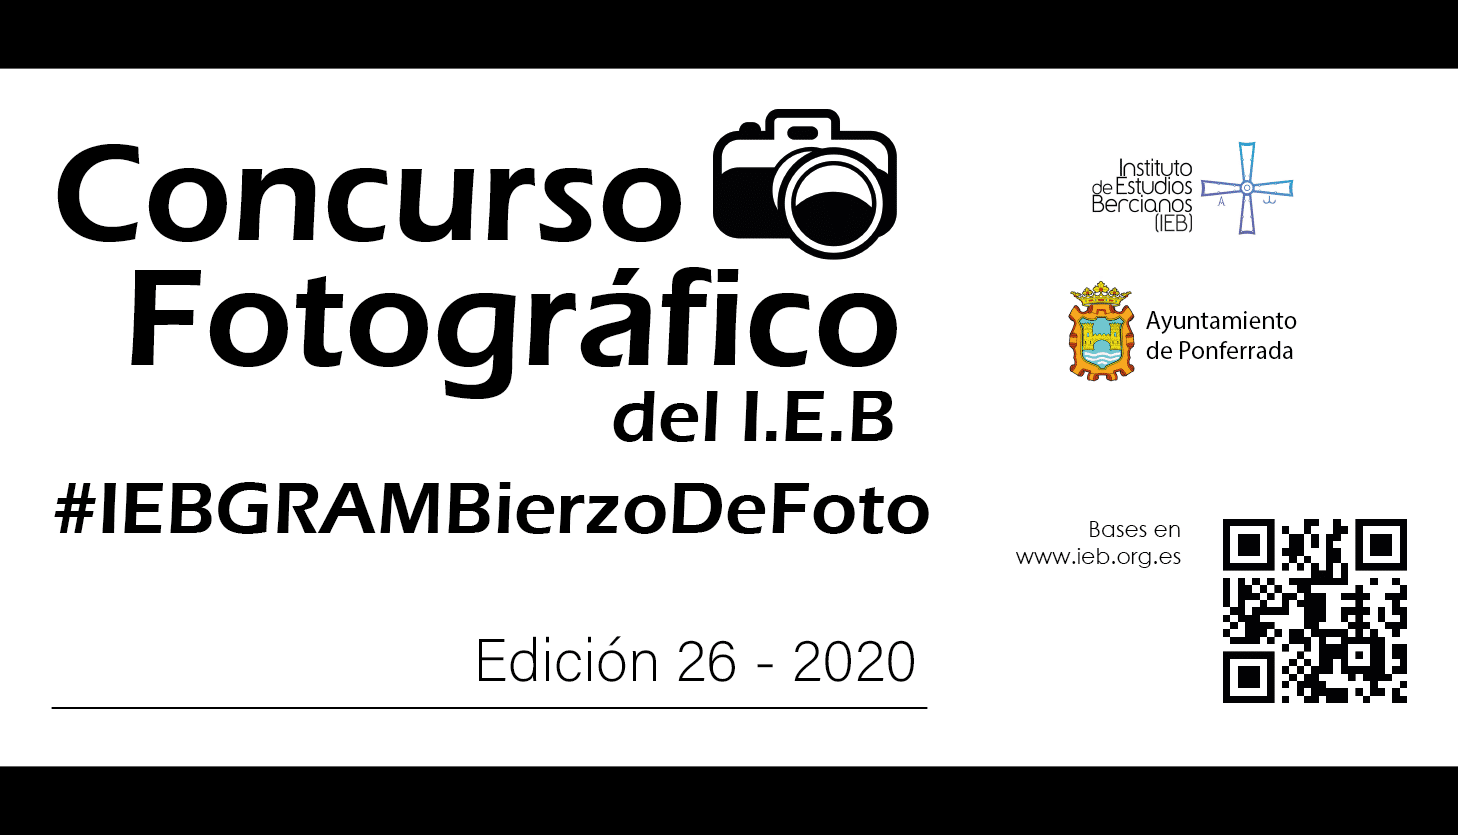 El IEB convoca el XXVI Concurso fotográfico, exclusivamente en Instagram y con un premio especial para jóvenes de hasta 18 años, #IEBGRAMBierzoDeFoto 2